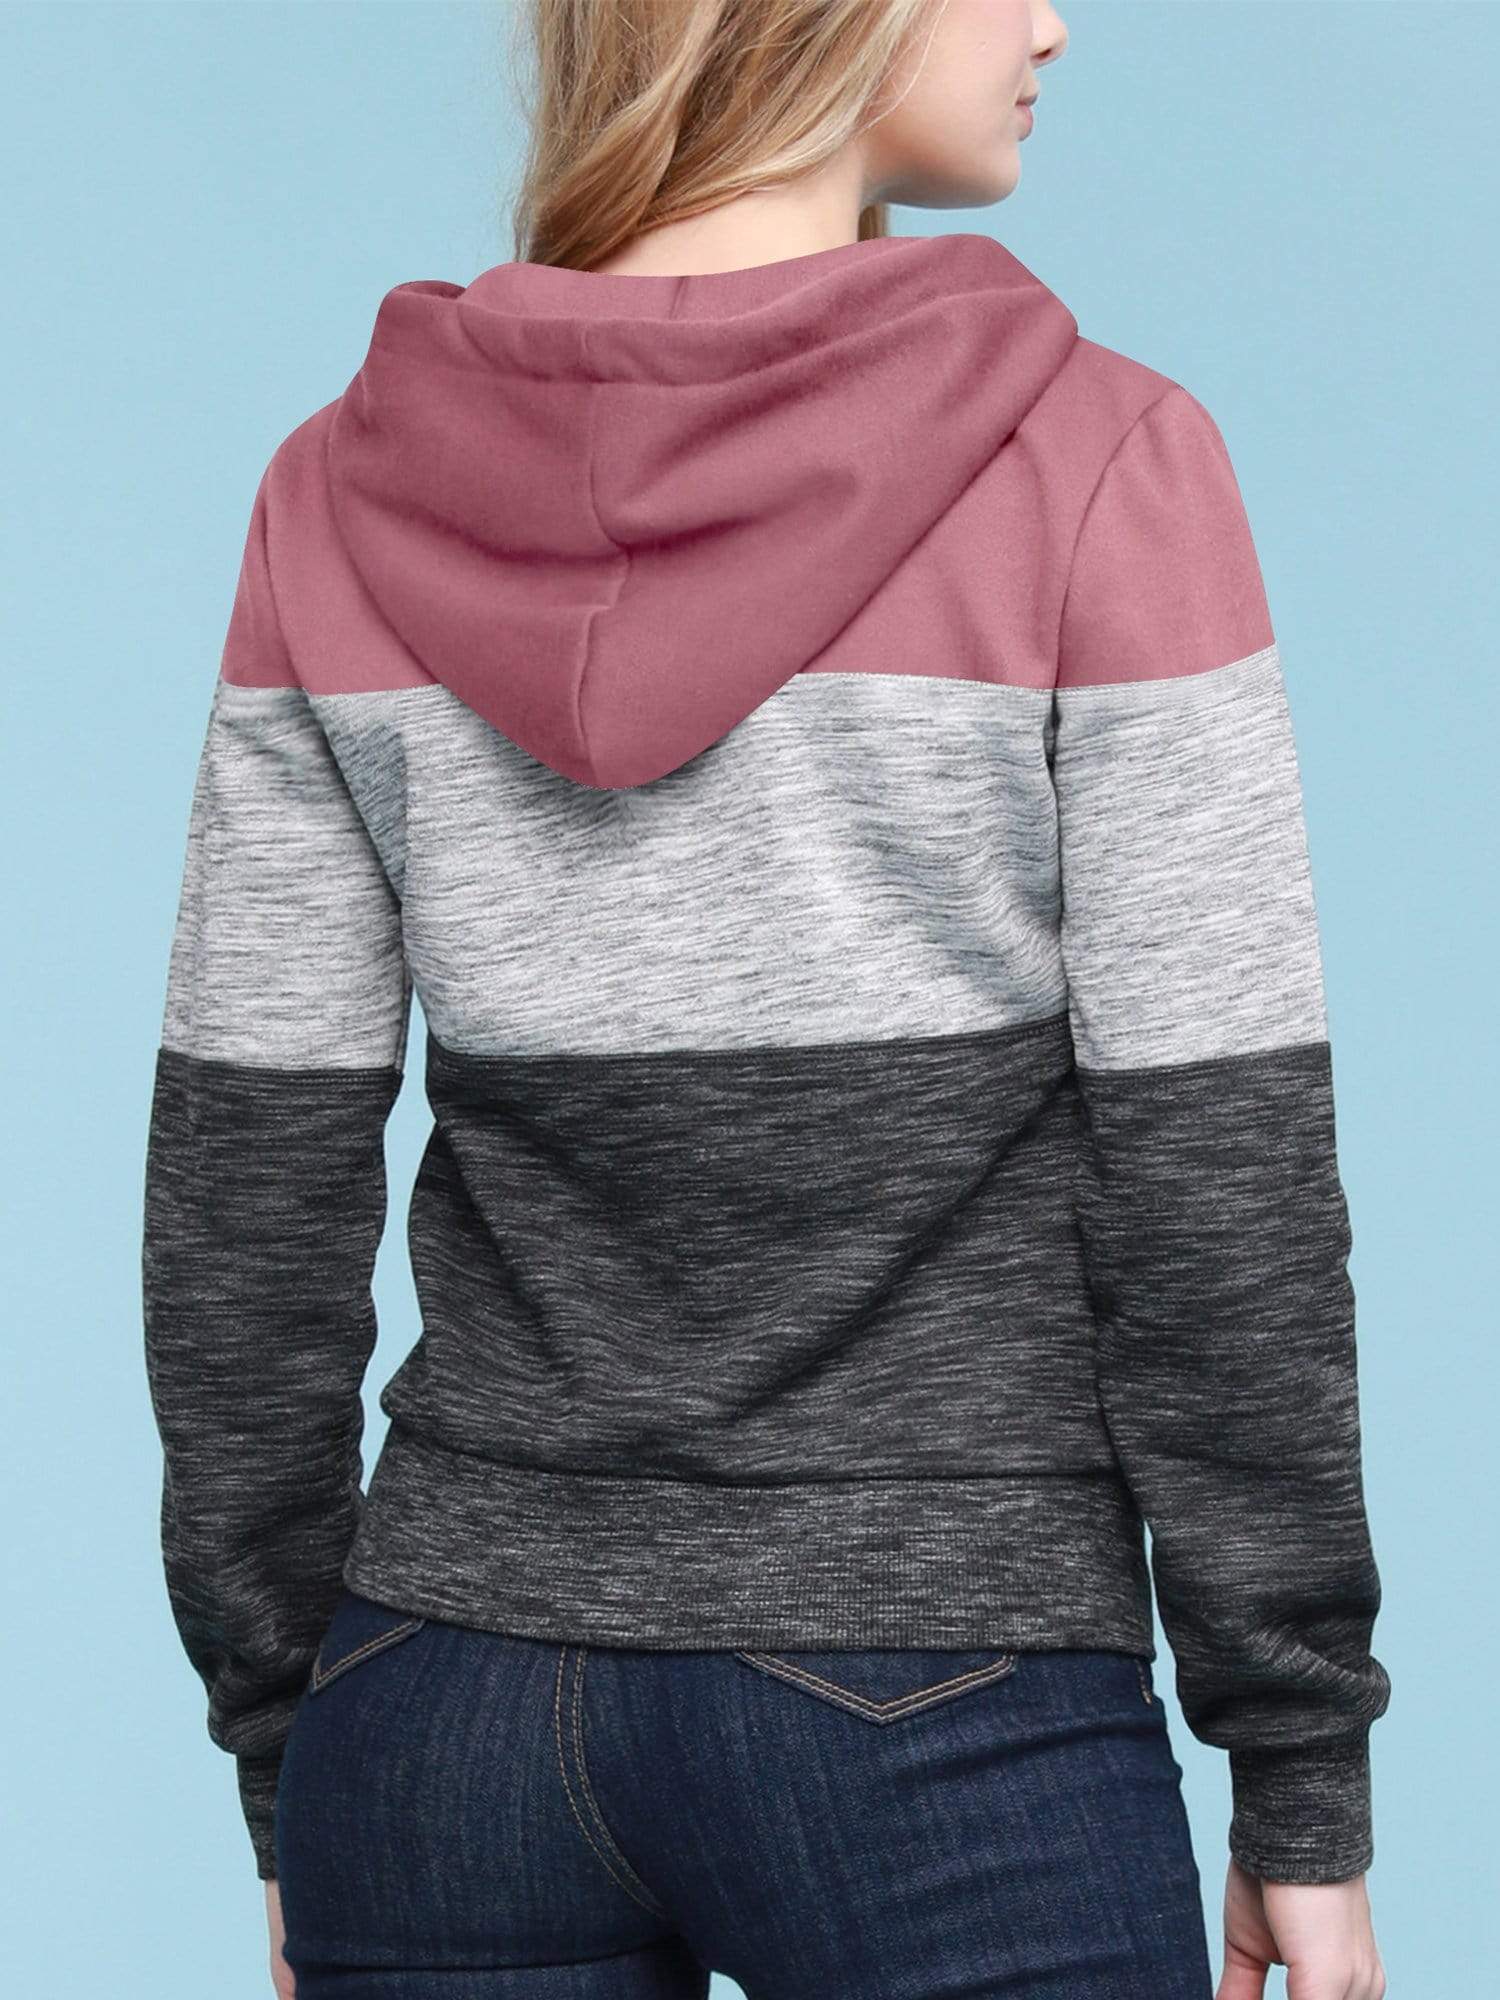 Women's Active Casual Zip-up Color Block Hoodie Sweatshirt Daily Haute